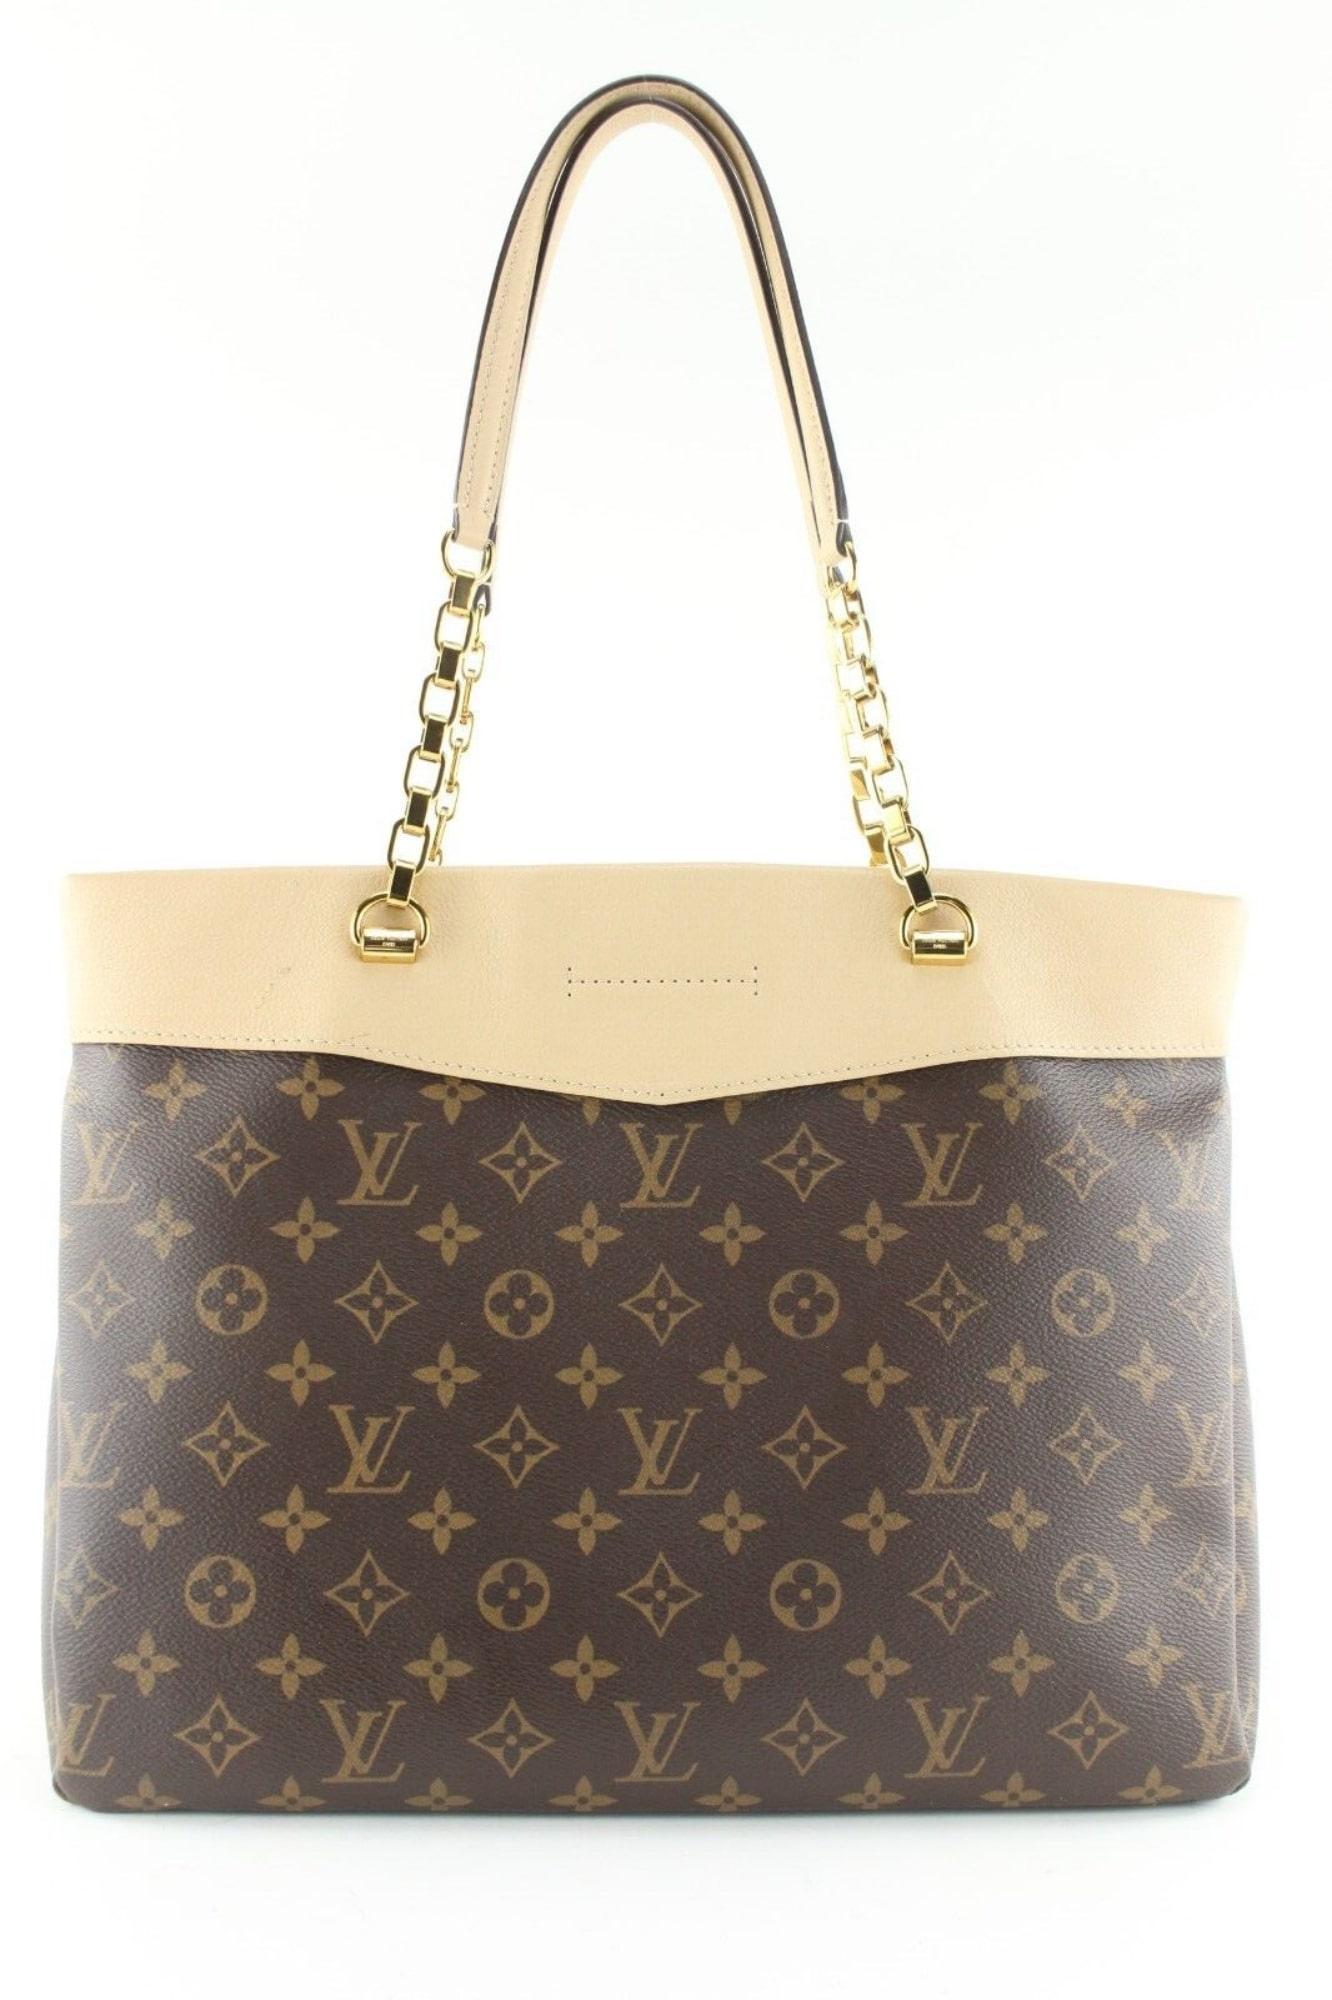 Louis Vuitton Monogram Pallas Shopper Dune Leather Chain Bag 4LK0502 For Sale 8